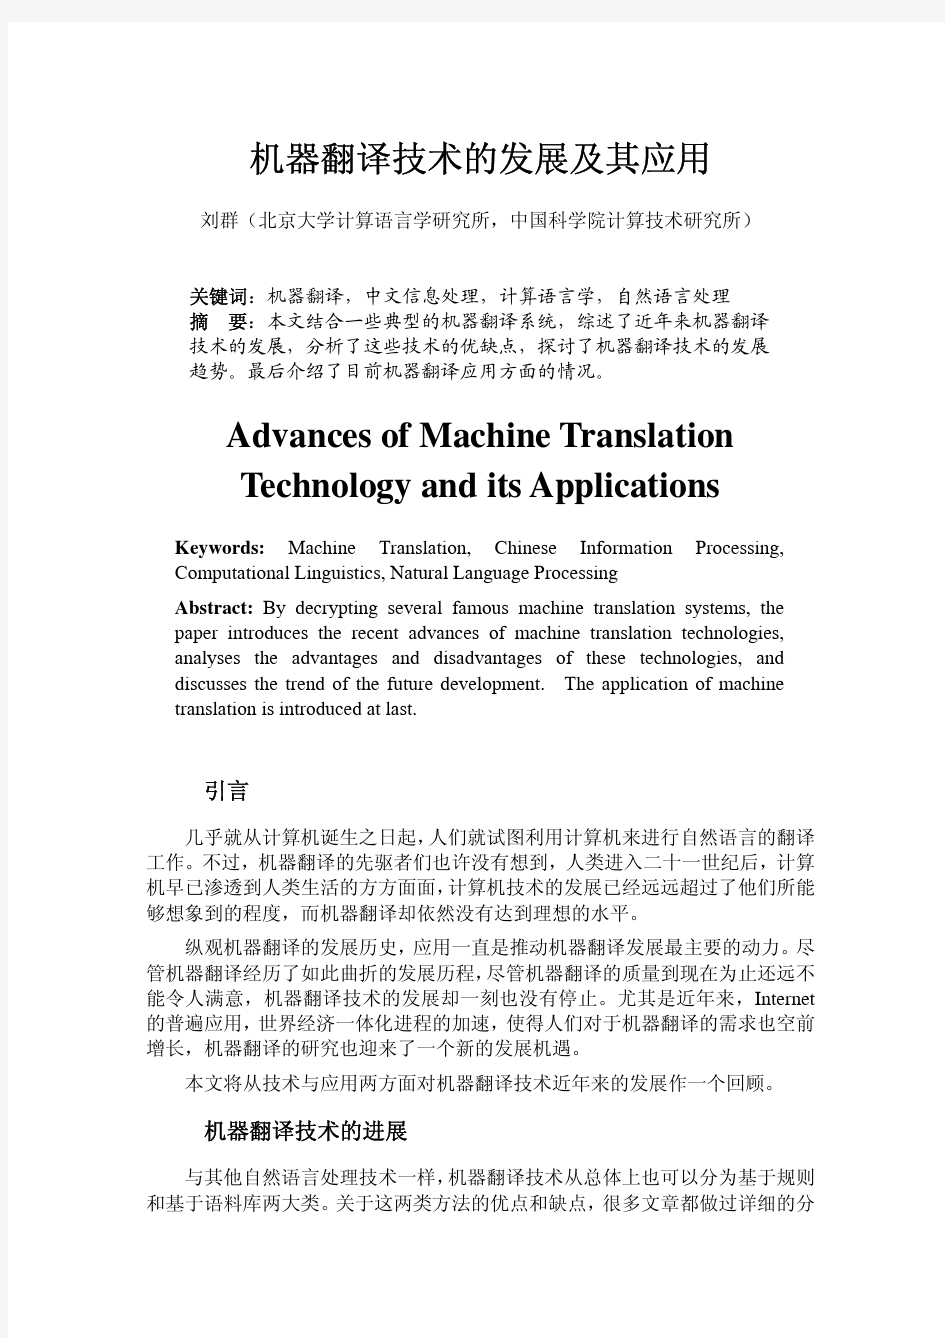 0409_7_刘群-机器翻译技术的发展及其应用[1]